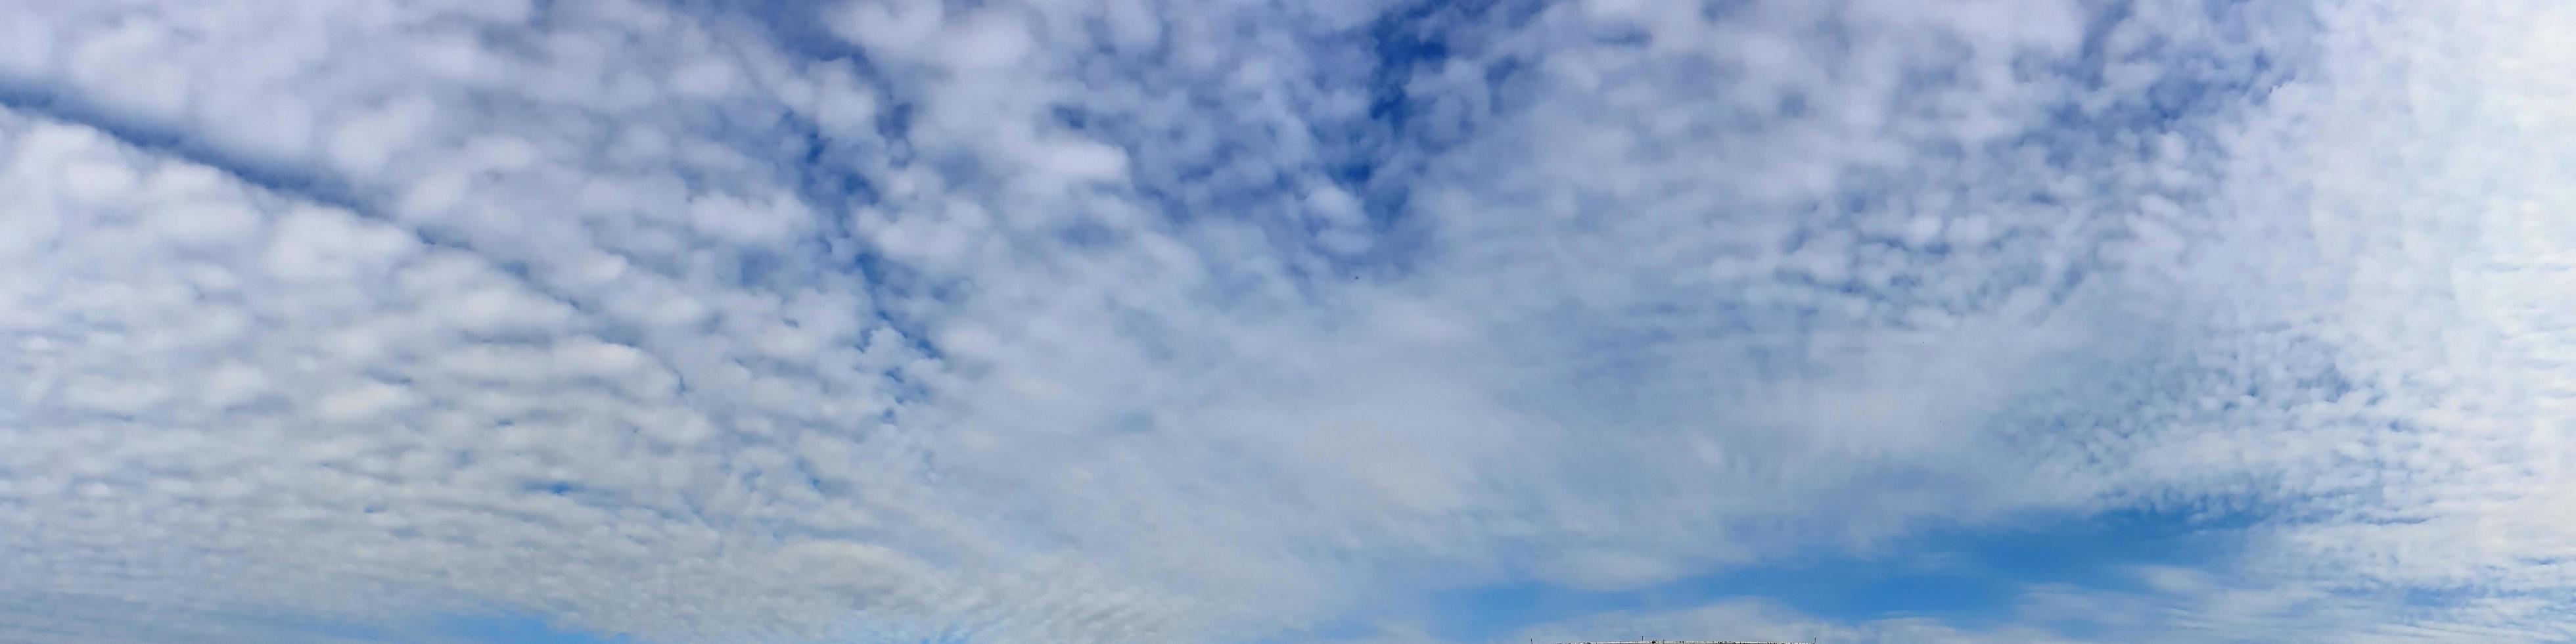 panorama del cielo con nubes en un día soleado foto